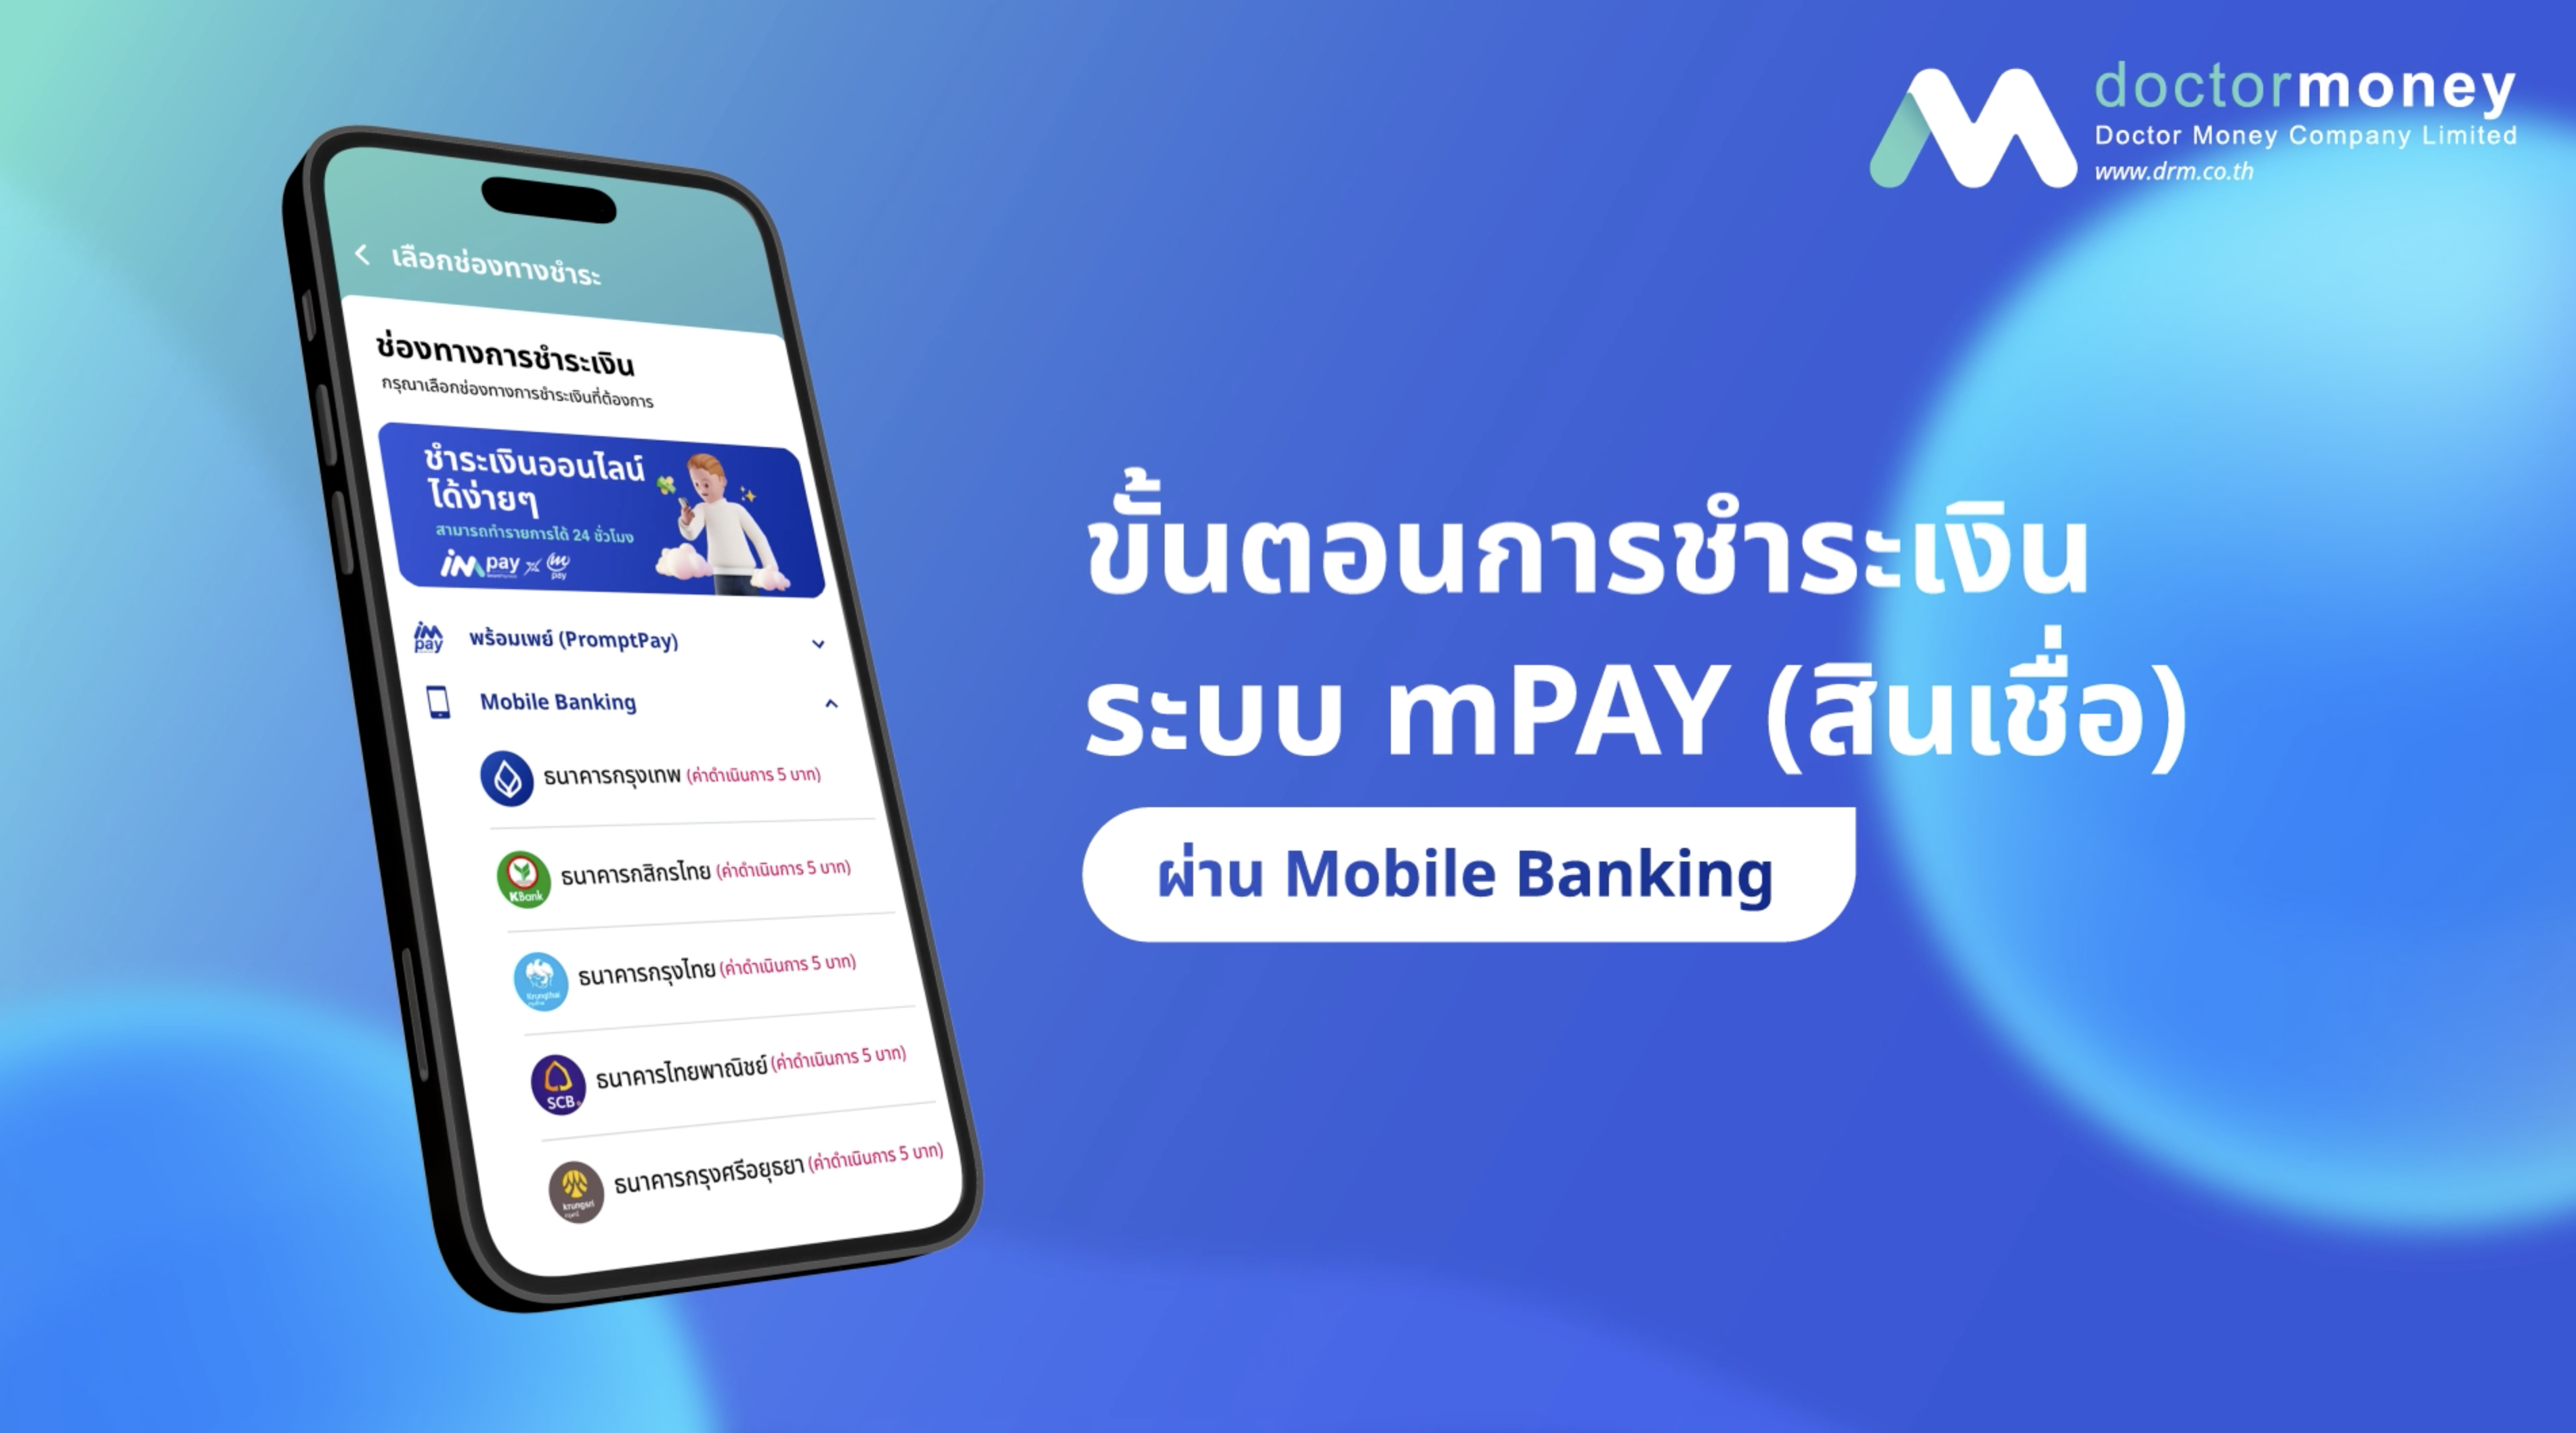 การชำระเงิน ระบบ mPAY ผ่าน Mobile Banking